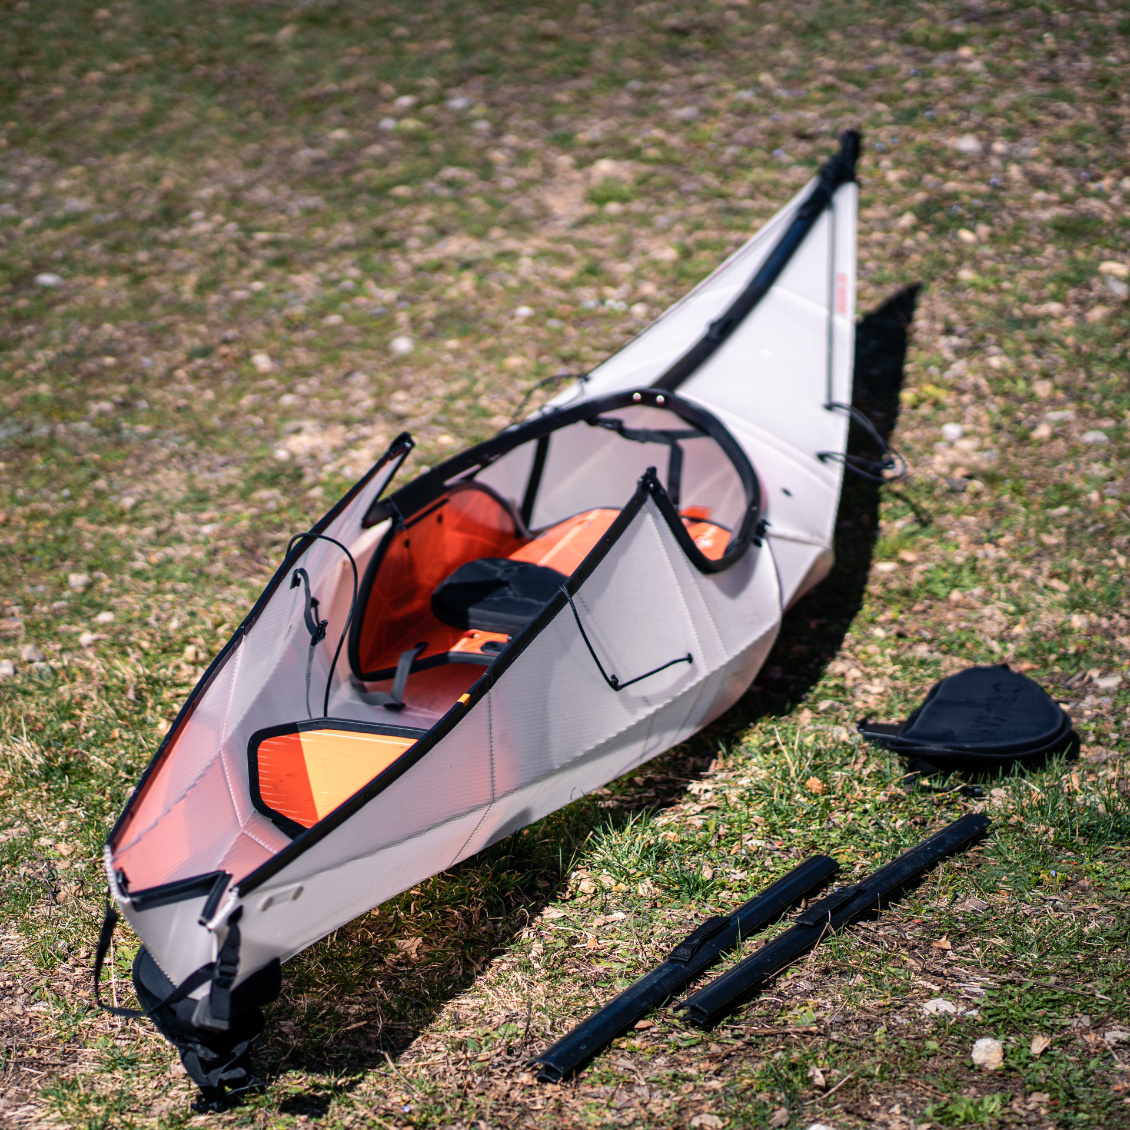 Seule opération plus fastidieuse : pour mettre des affaires dans le kayak, il vaut mieux retirer les rails et le crochet pour ouvrir complètement le kayak.